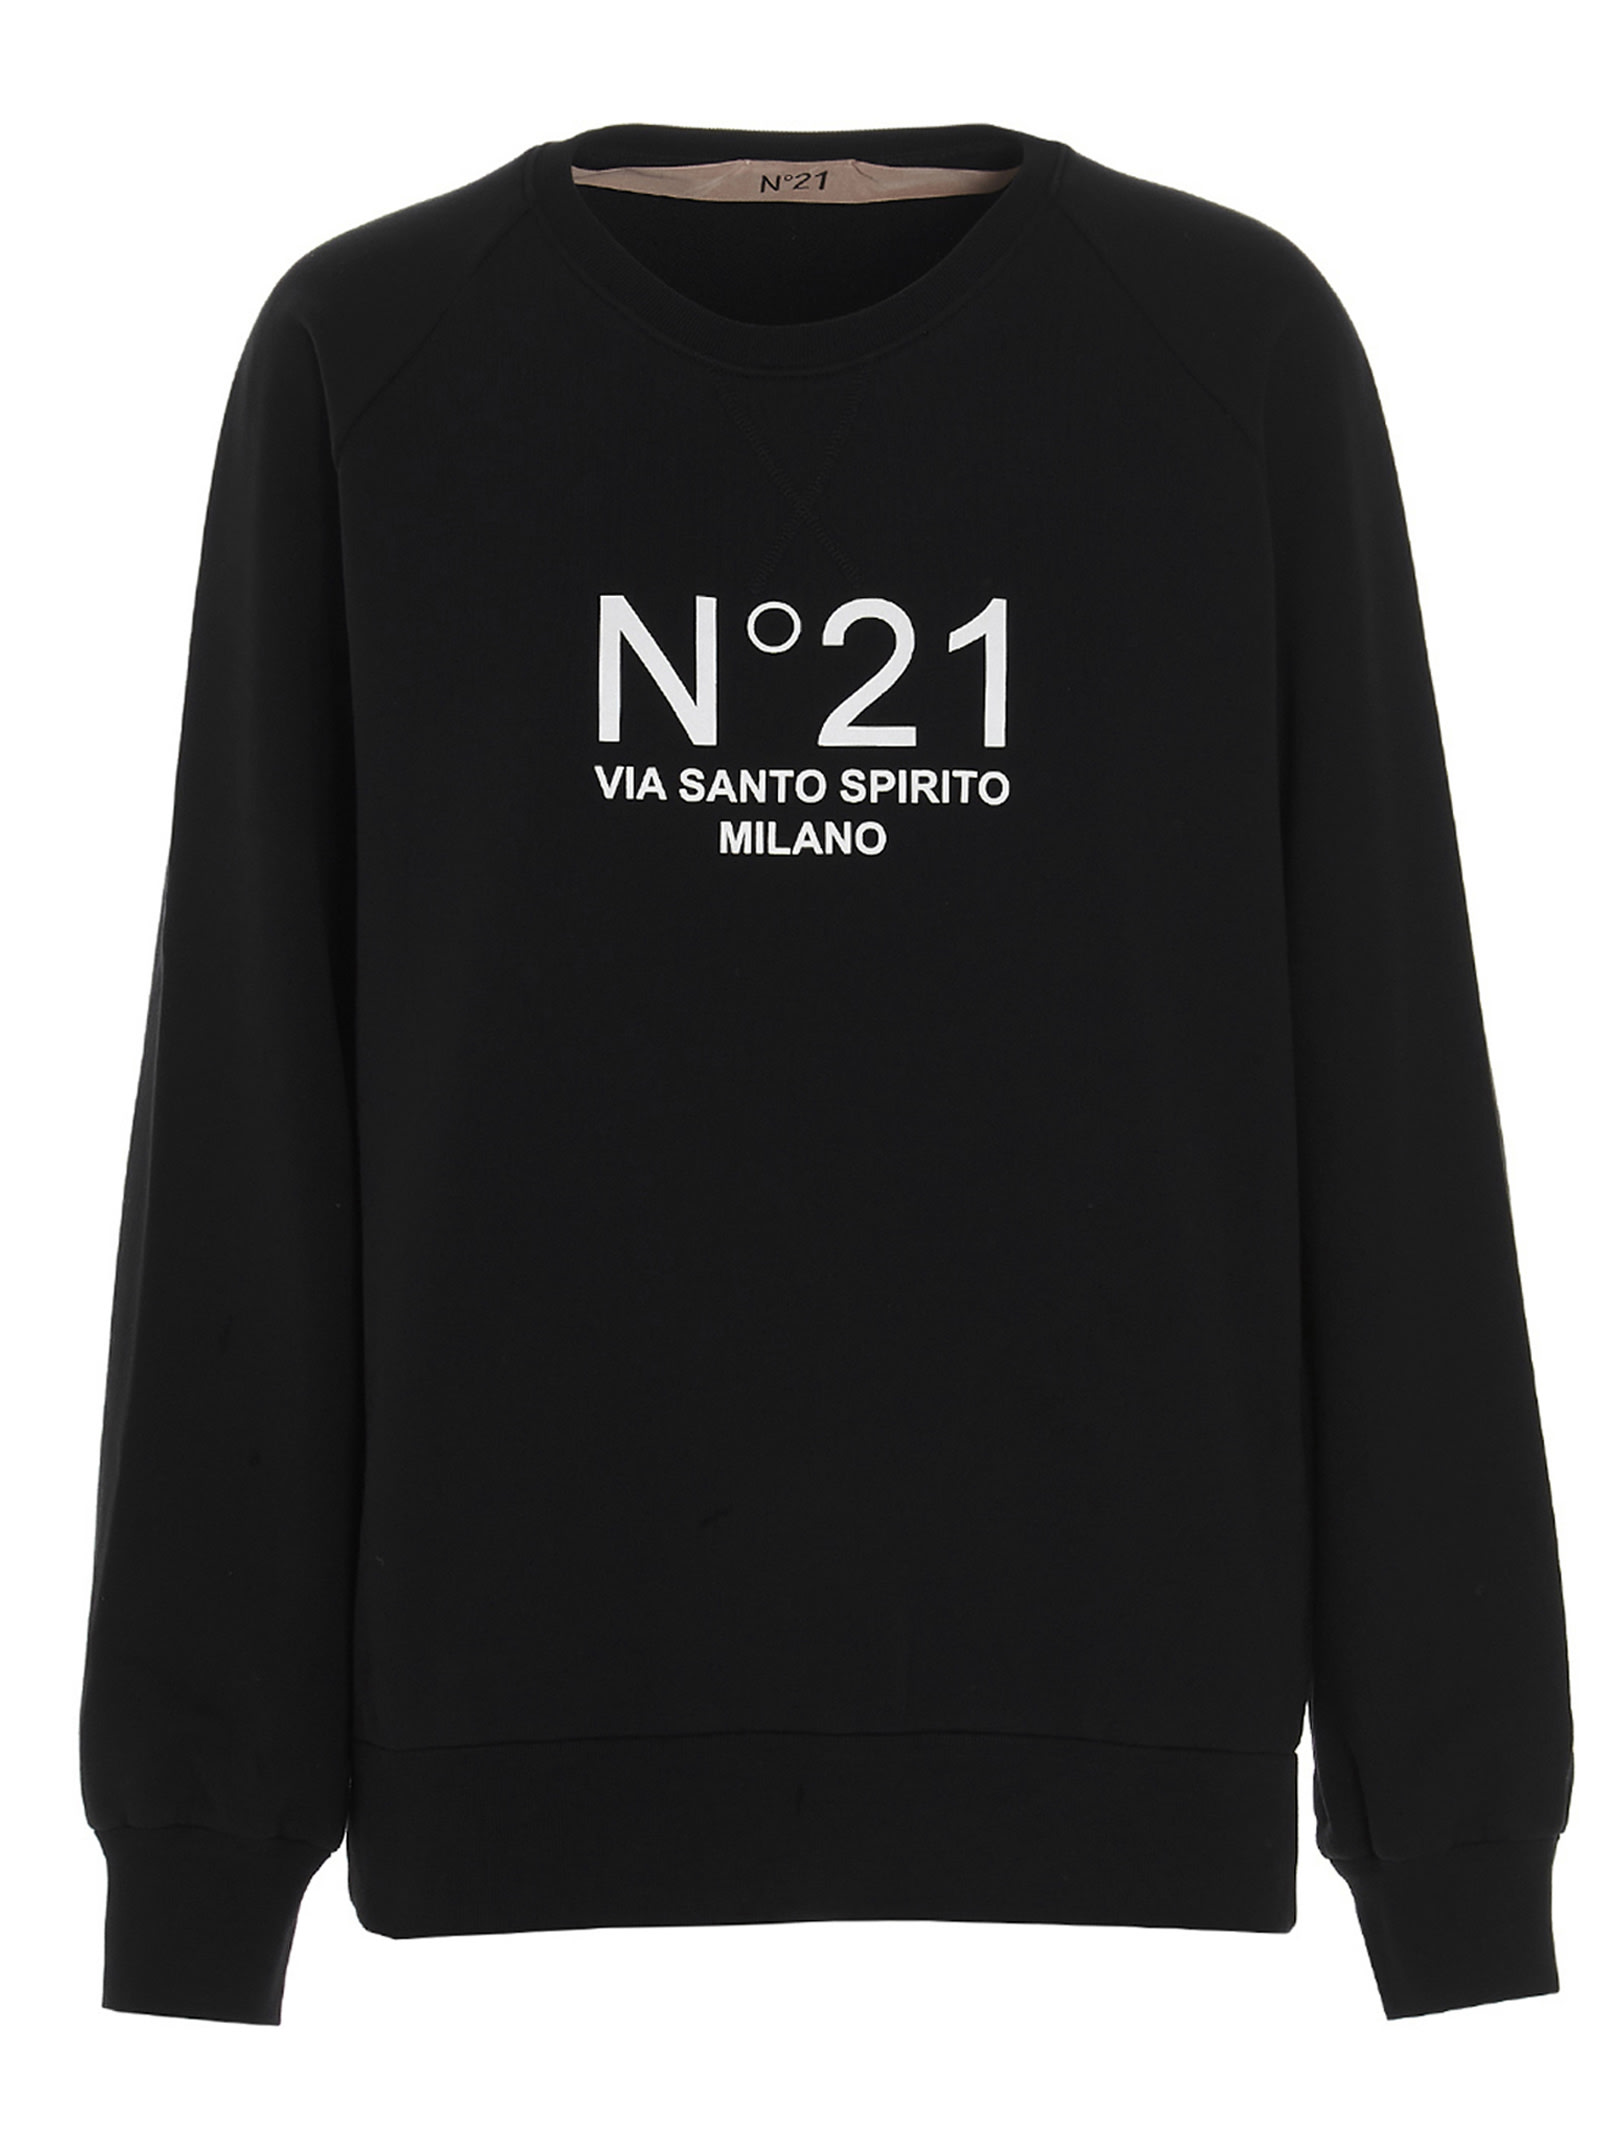 N.21 n21 Santo Spirito Sweatshirt